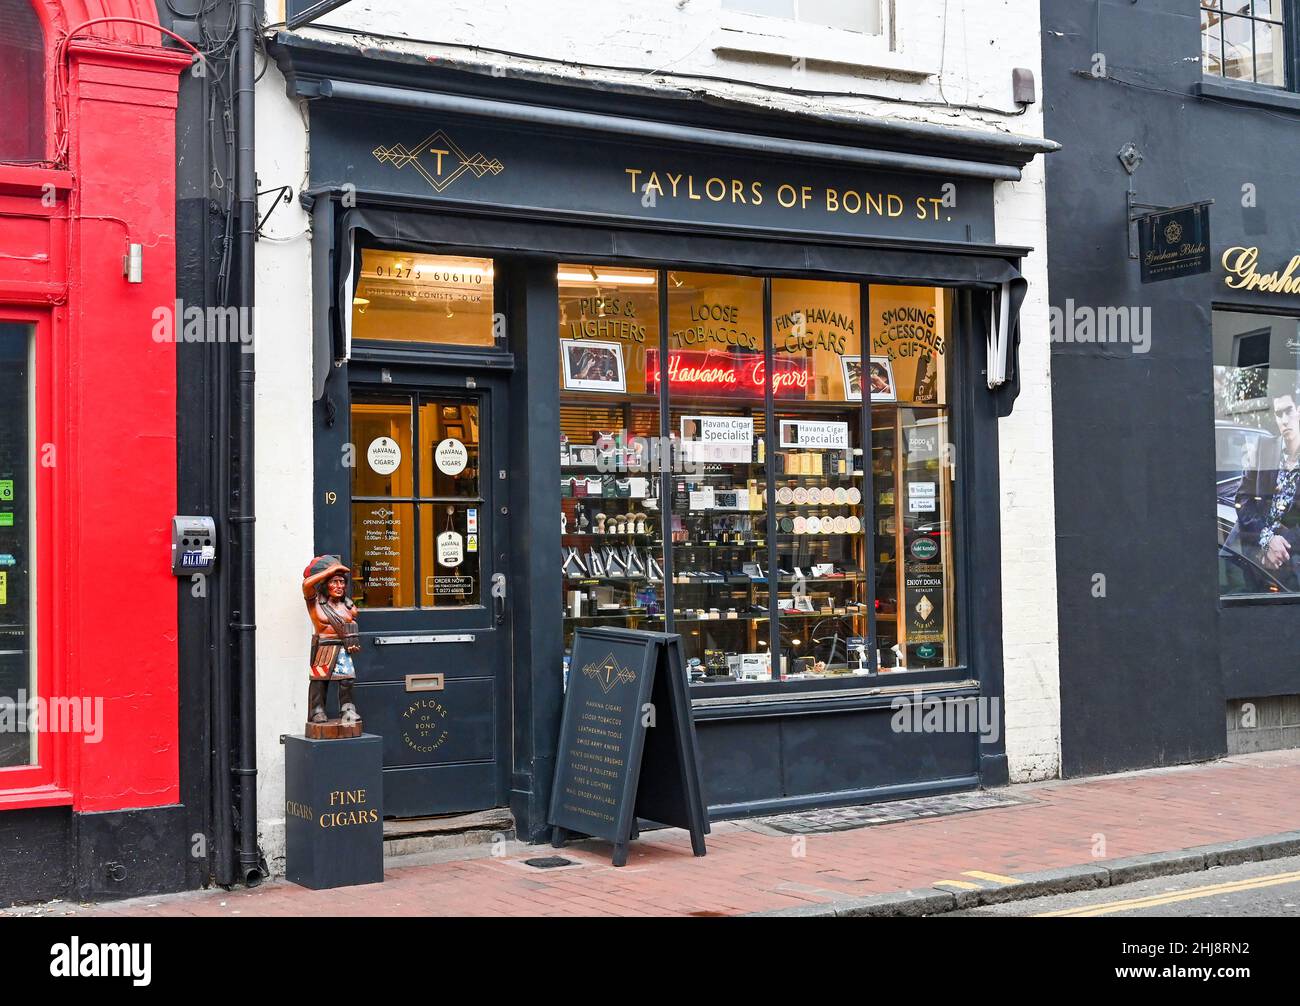 North Laine Shops à Brighton Sussex Angleterre Royaume-Uni - Taylors of Bond Street tobacconist , cigares et spécialistes de la pipe Banque D'Images